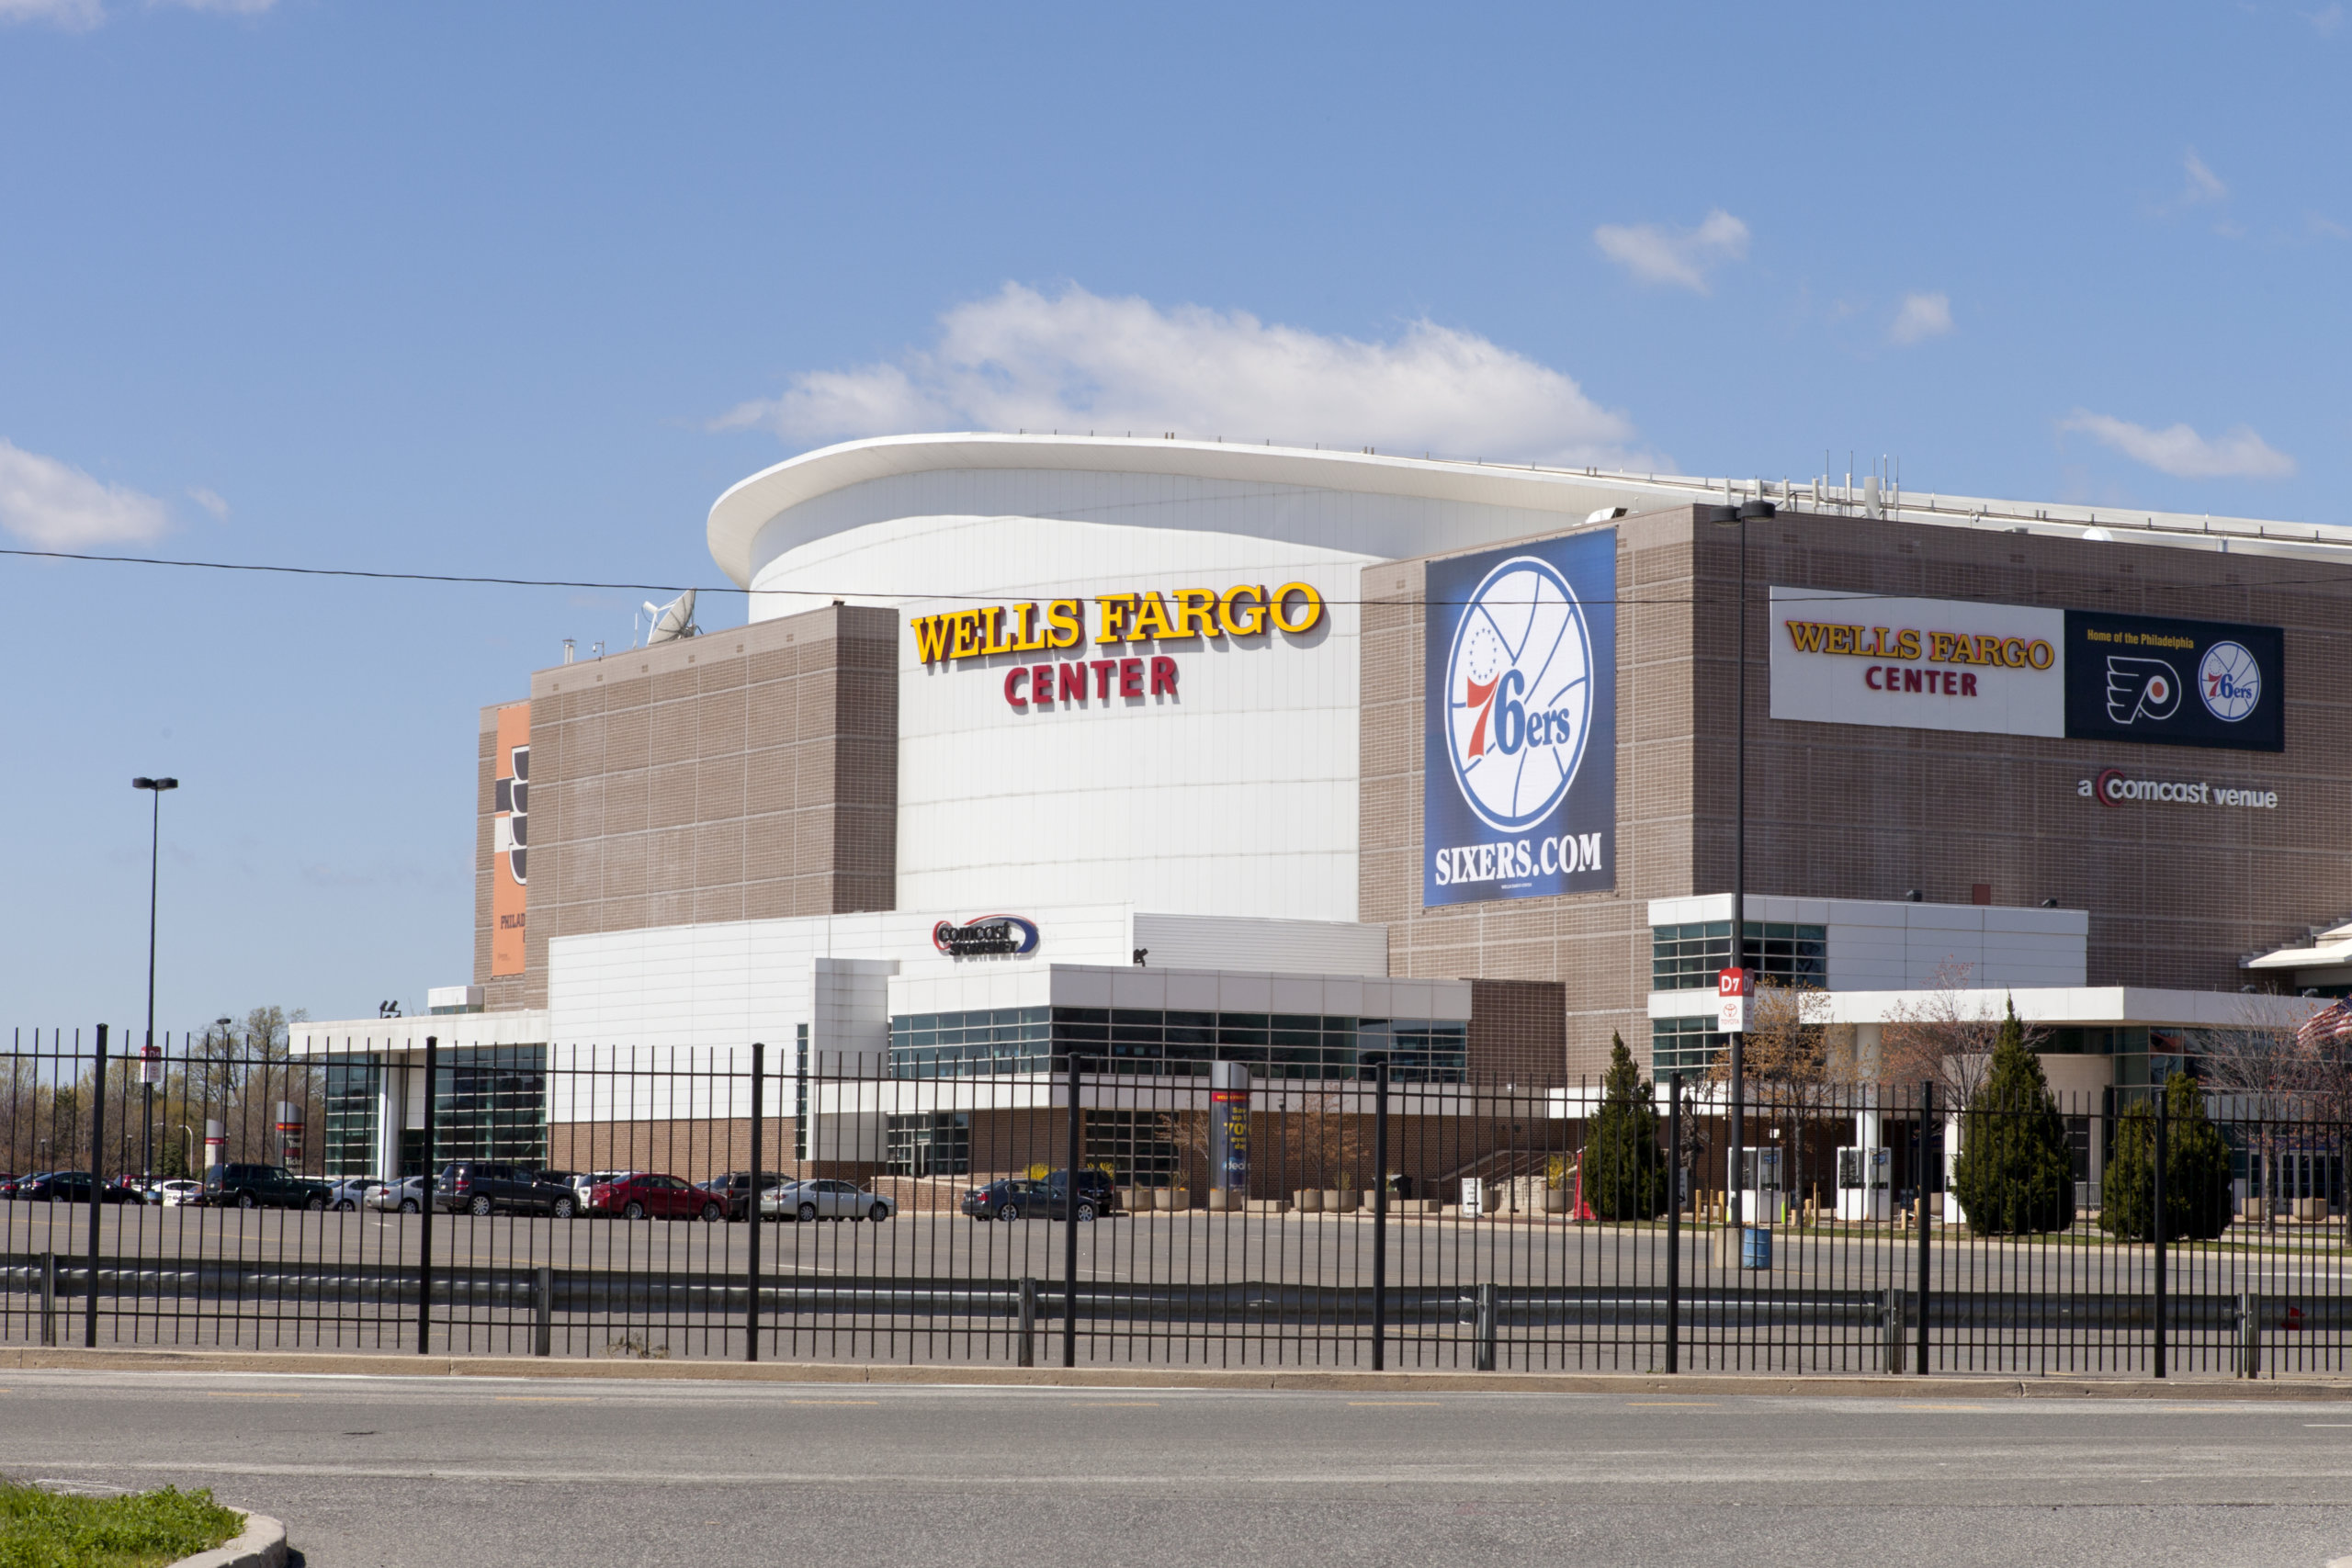 Wells Fargo Center – Philadelphia 76ers